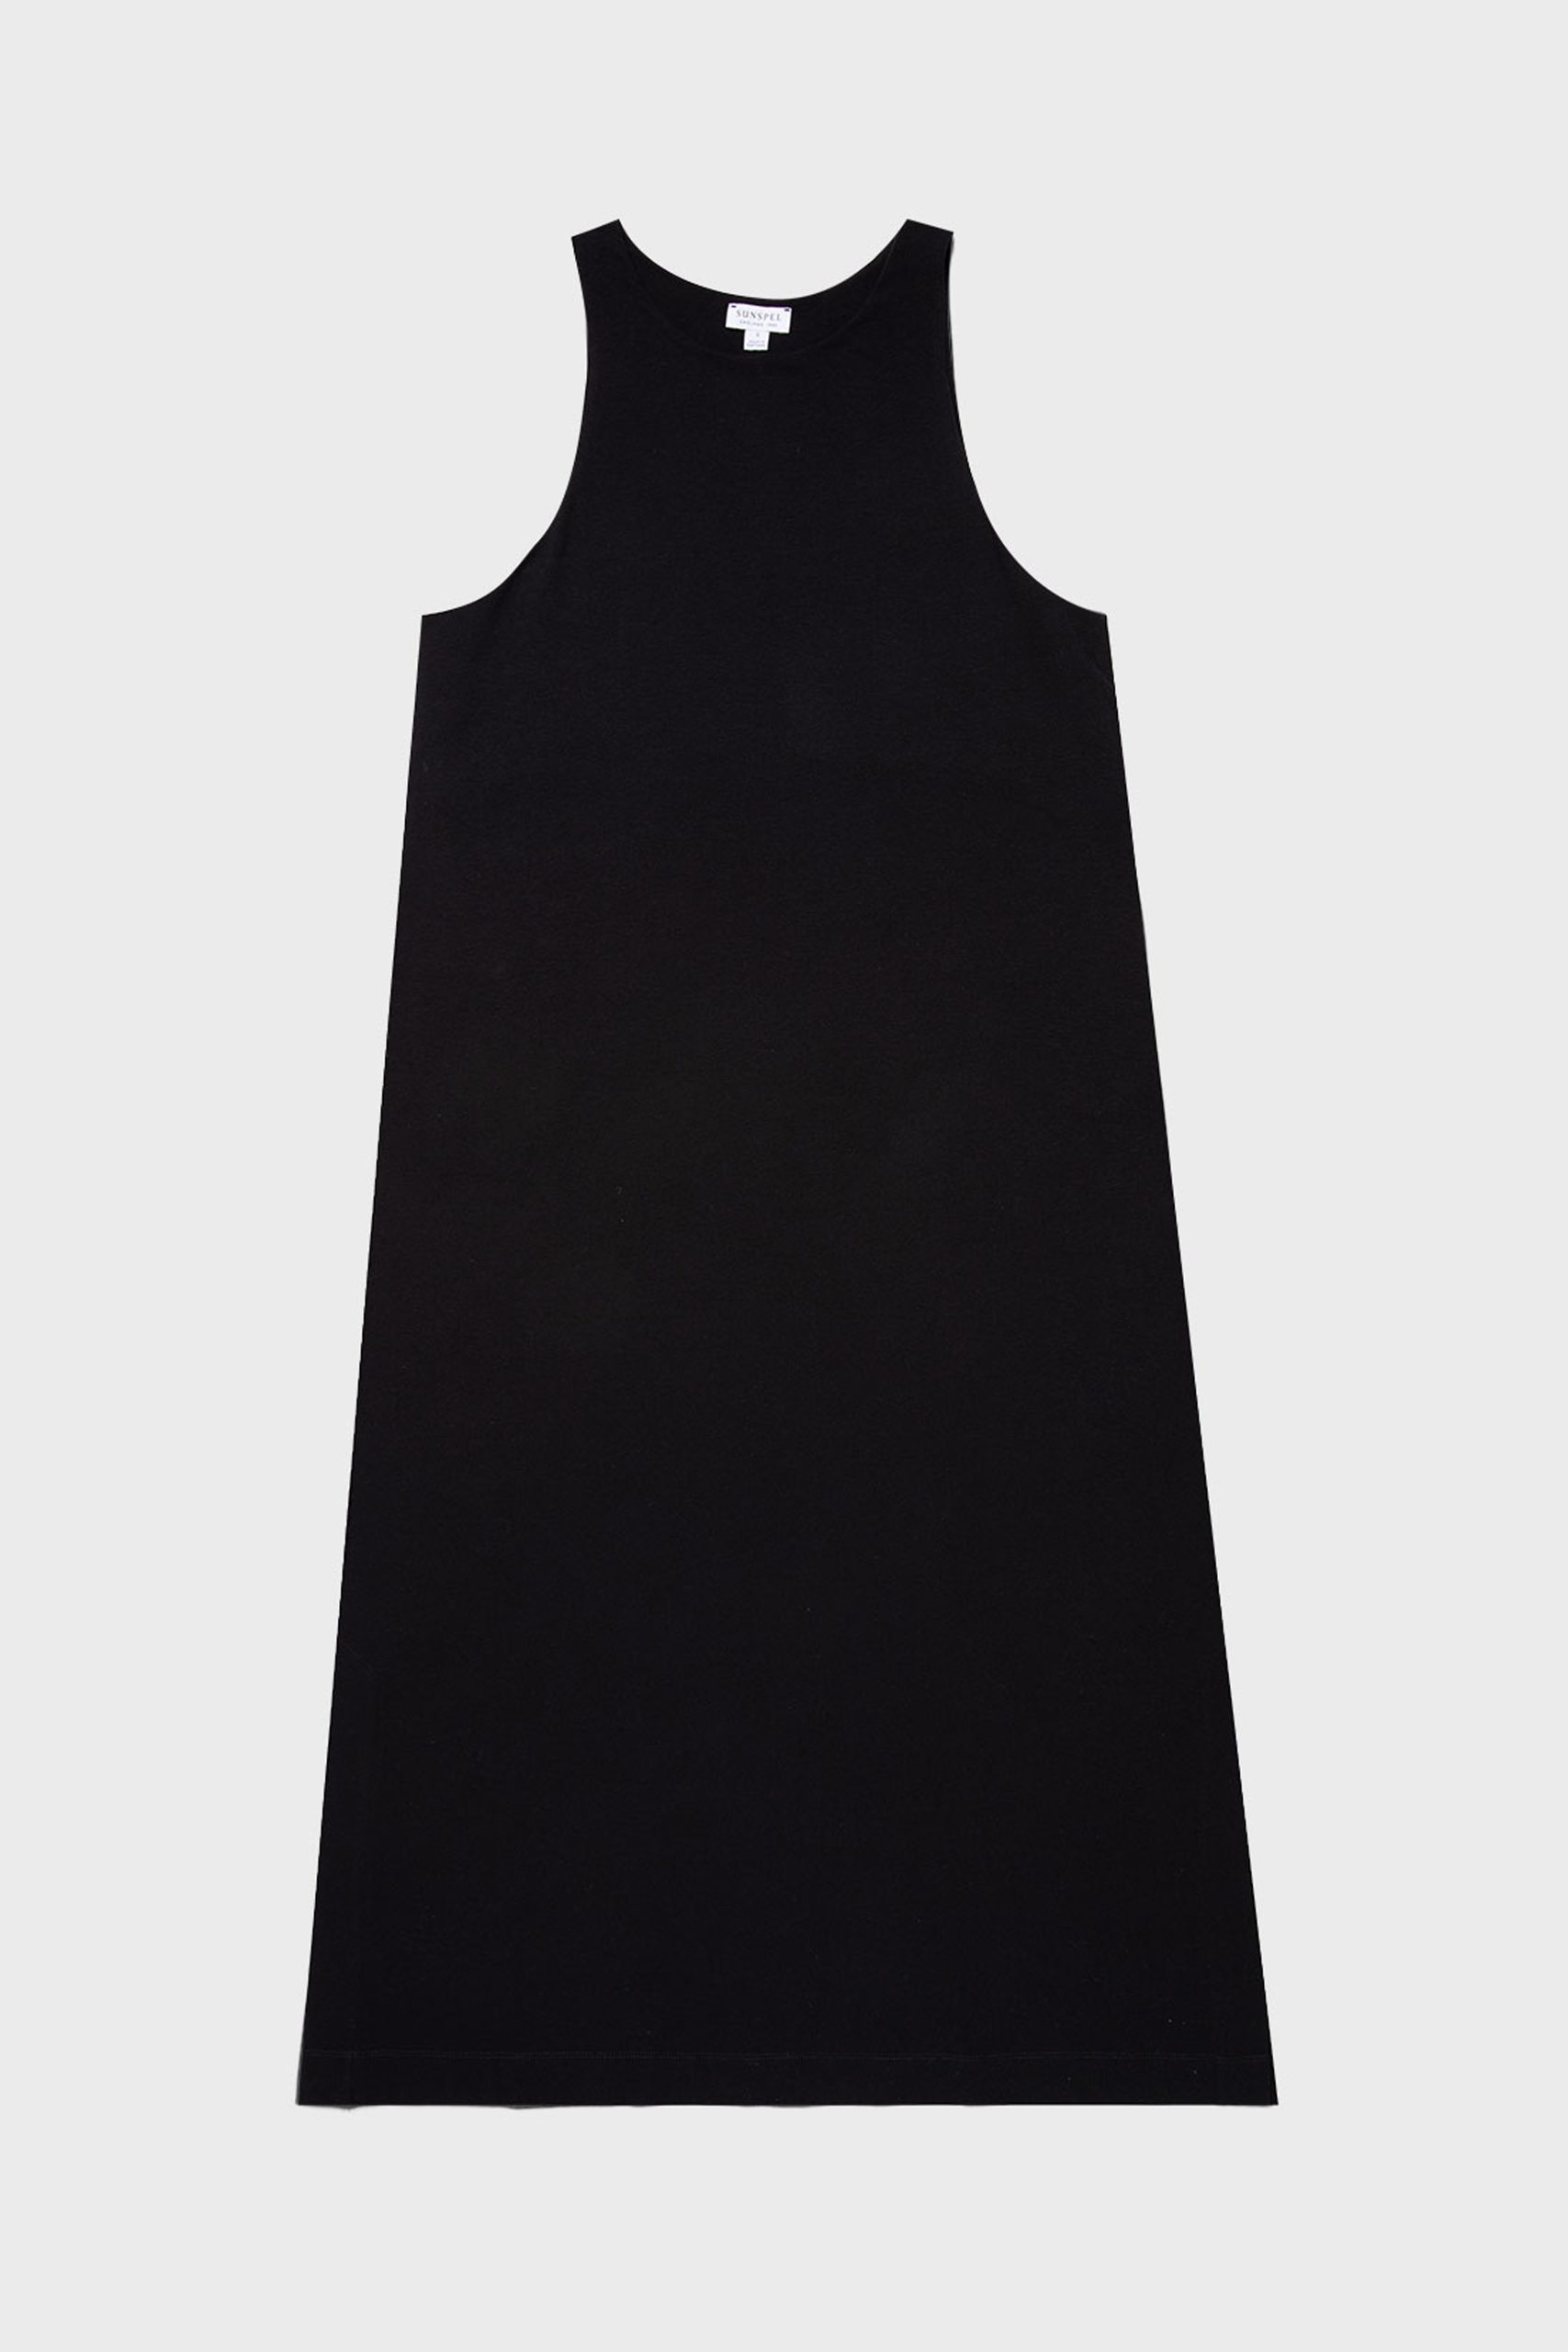 SUNSPEL JERSEY MIDI Dress Black